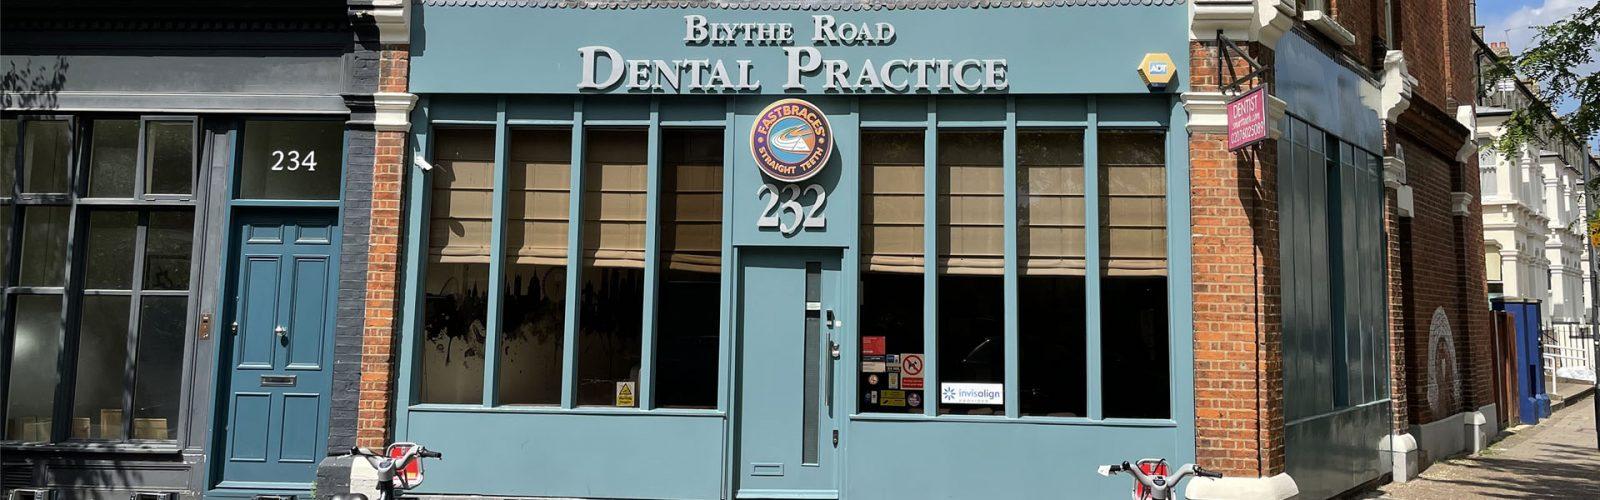 Blythe Road Dental Practice